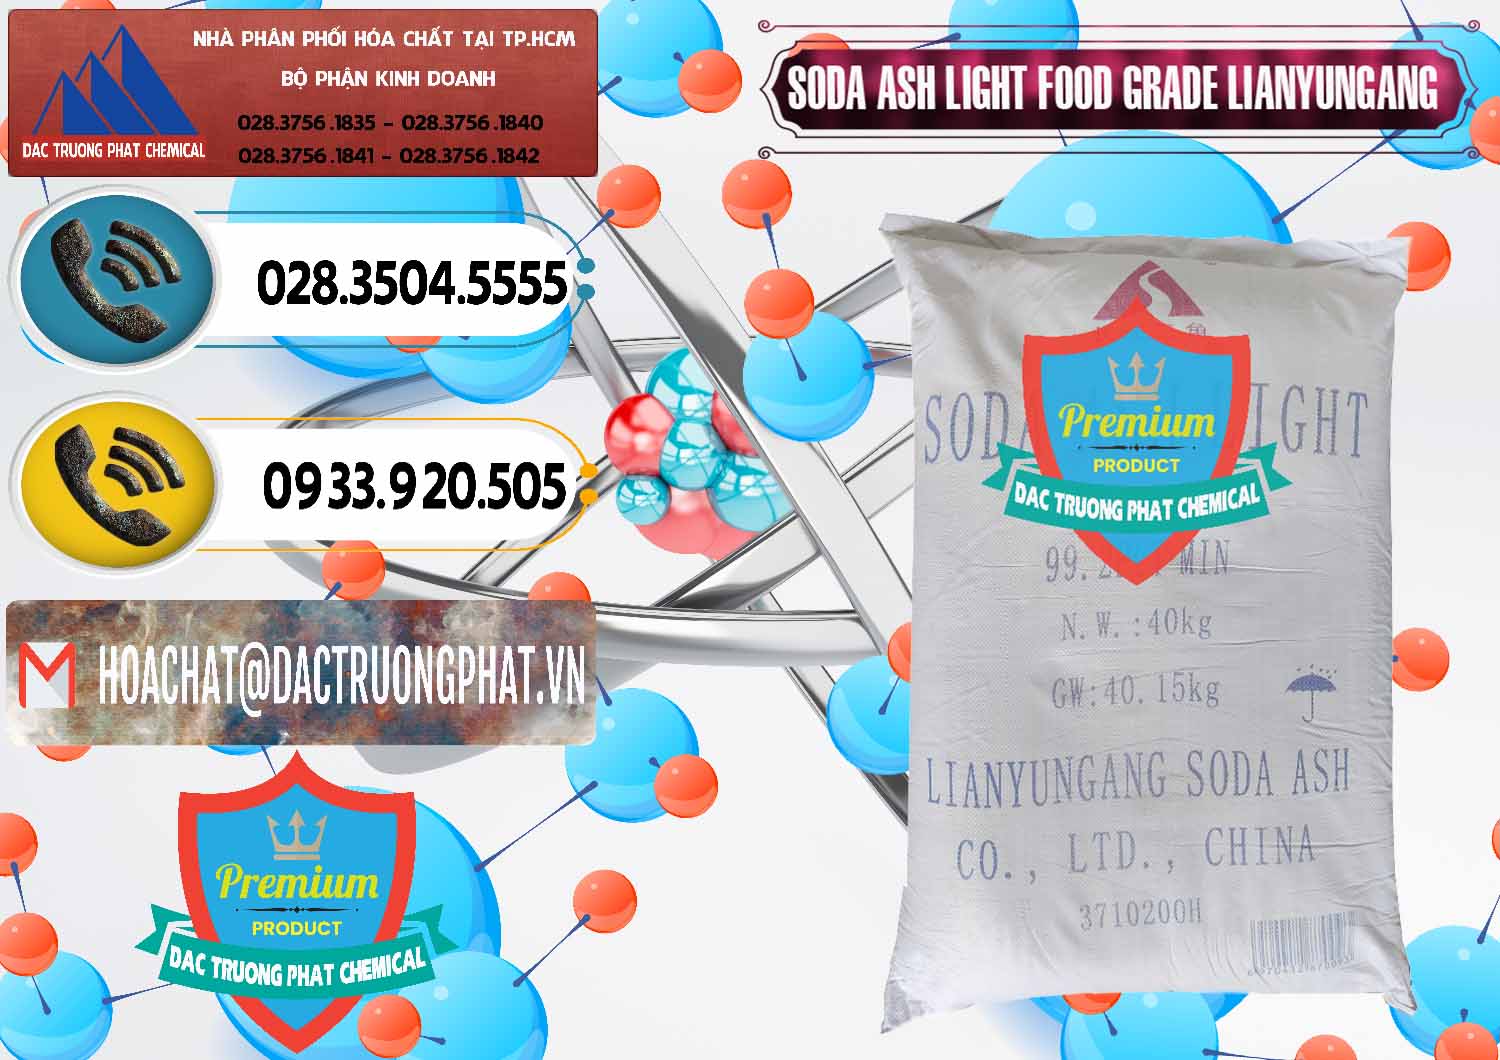 Chuyên kinh doanh ( bán ) Soda Ash Light - NA2CO3 Food Grade Lianyungang Trung Quốc - 0222 - Công ty cung cấp & kinh doanh hóa chất tại TP.HCM - hoachatdetnhuom.vn